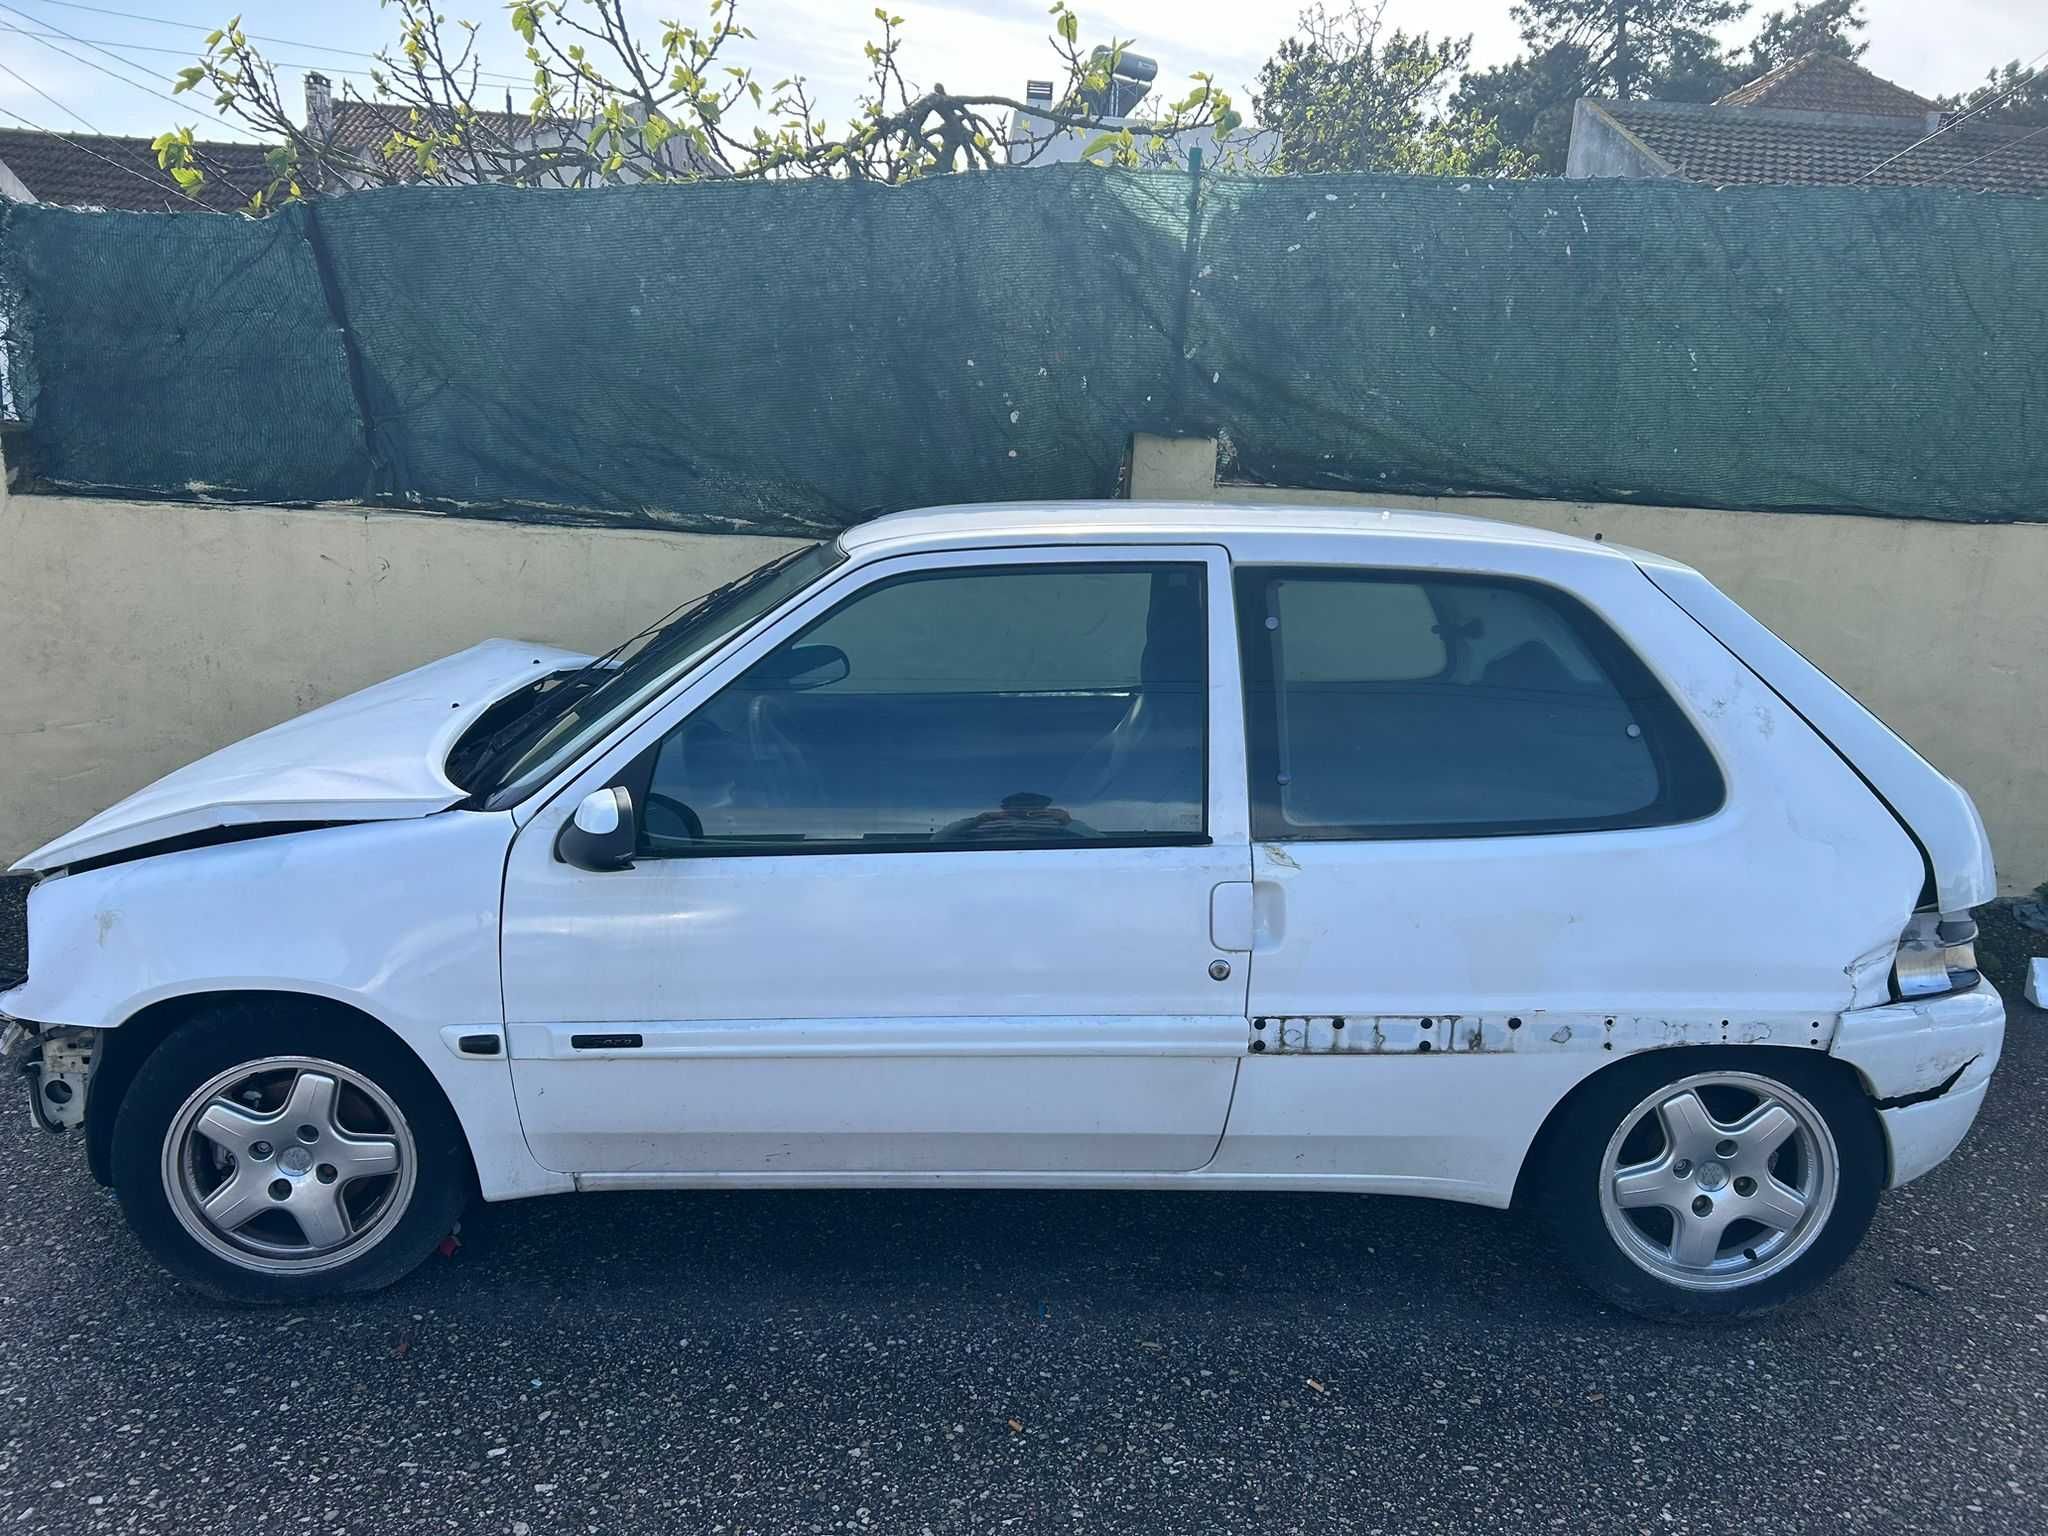 Citroën Saxo para Peças (Acidentado LER DESCRIÇÃO)